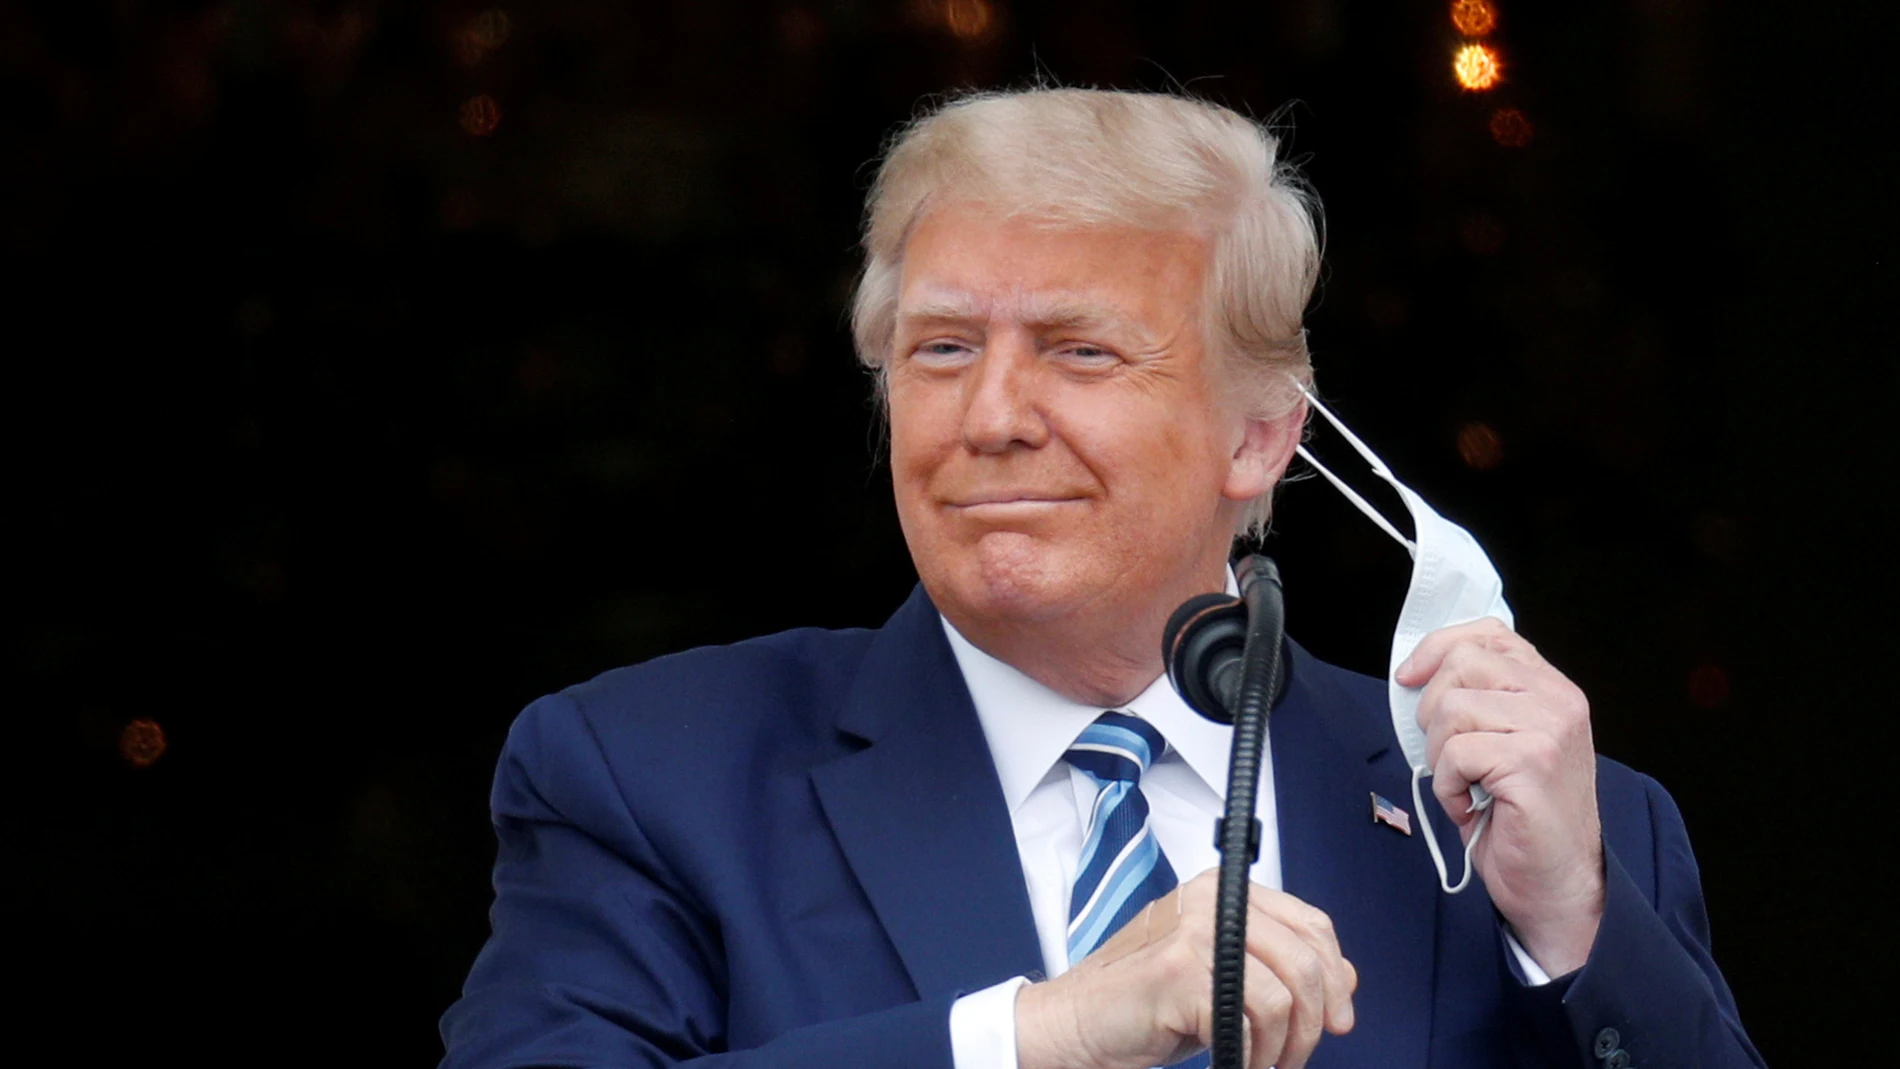 El presidente de los EEUU, Donald Trump, se quita la mascarilla